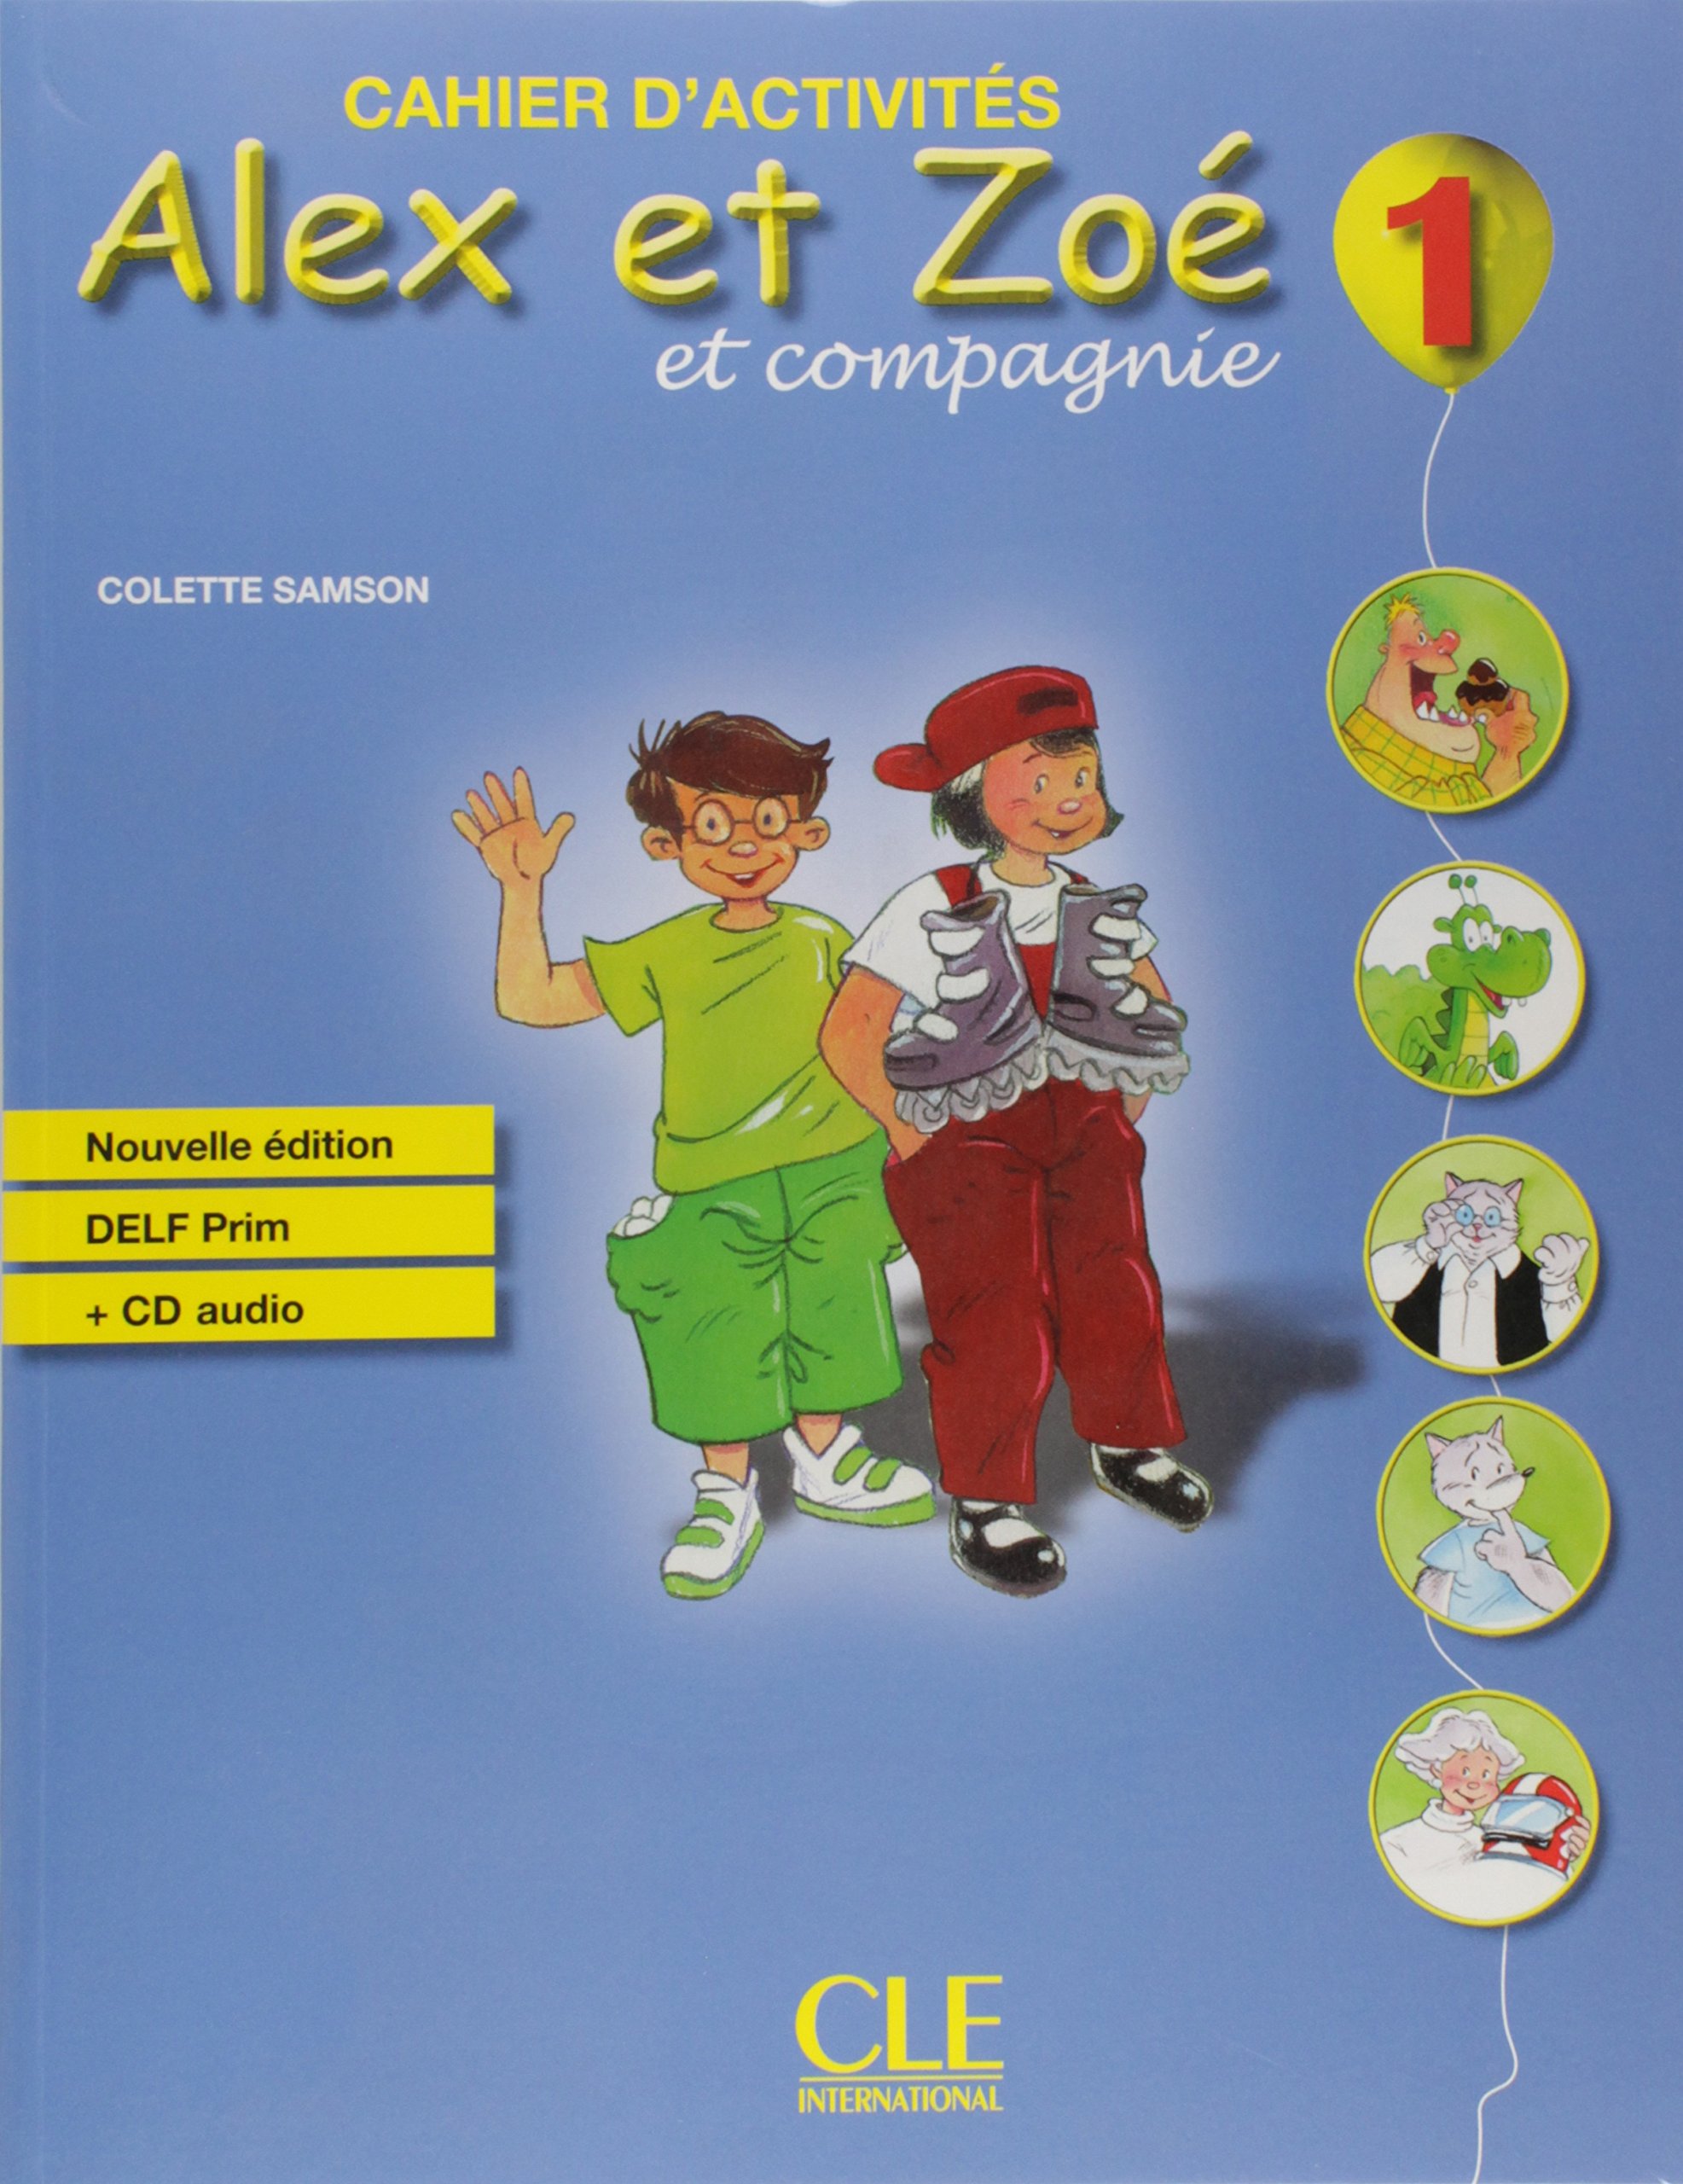 Colette Samson Alex et Zoe 1. Nouvelle edition - Cahier d'activites + DELF Prim + CD-Audio 